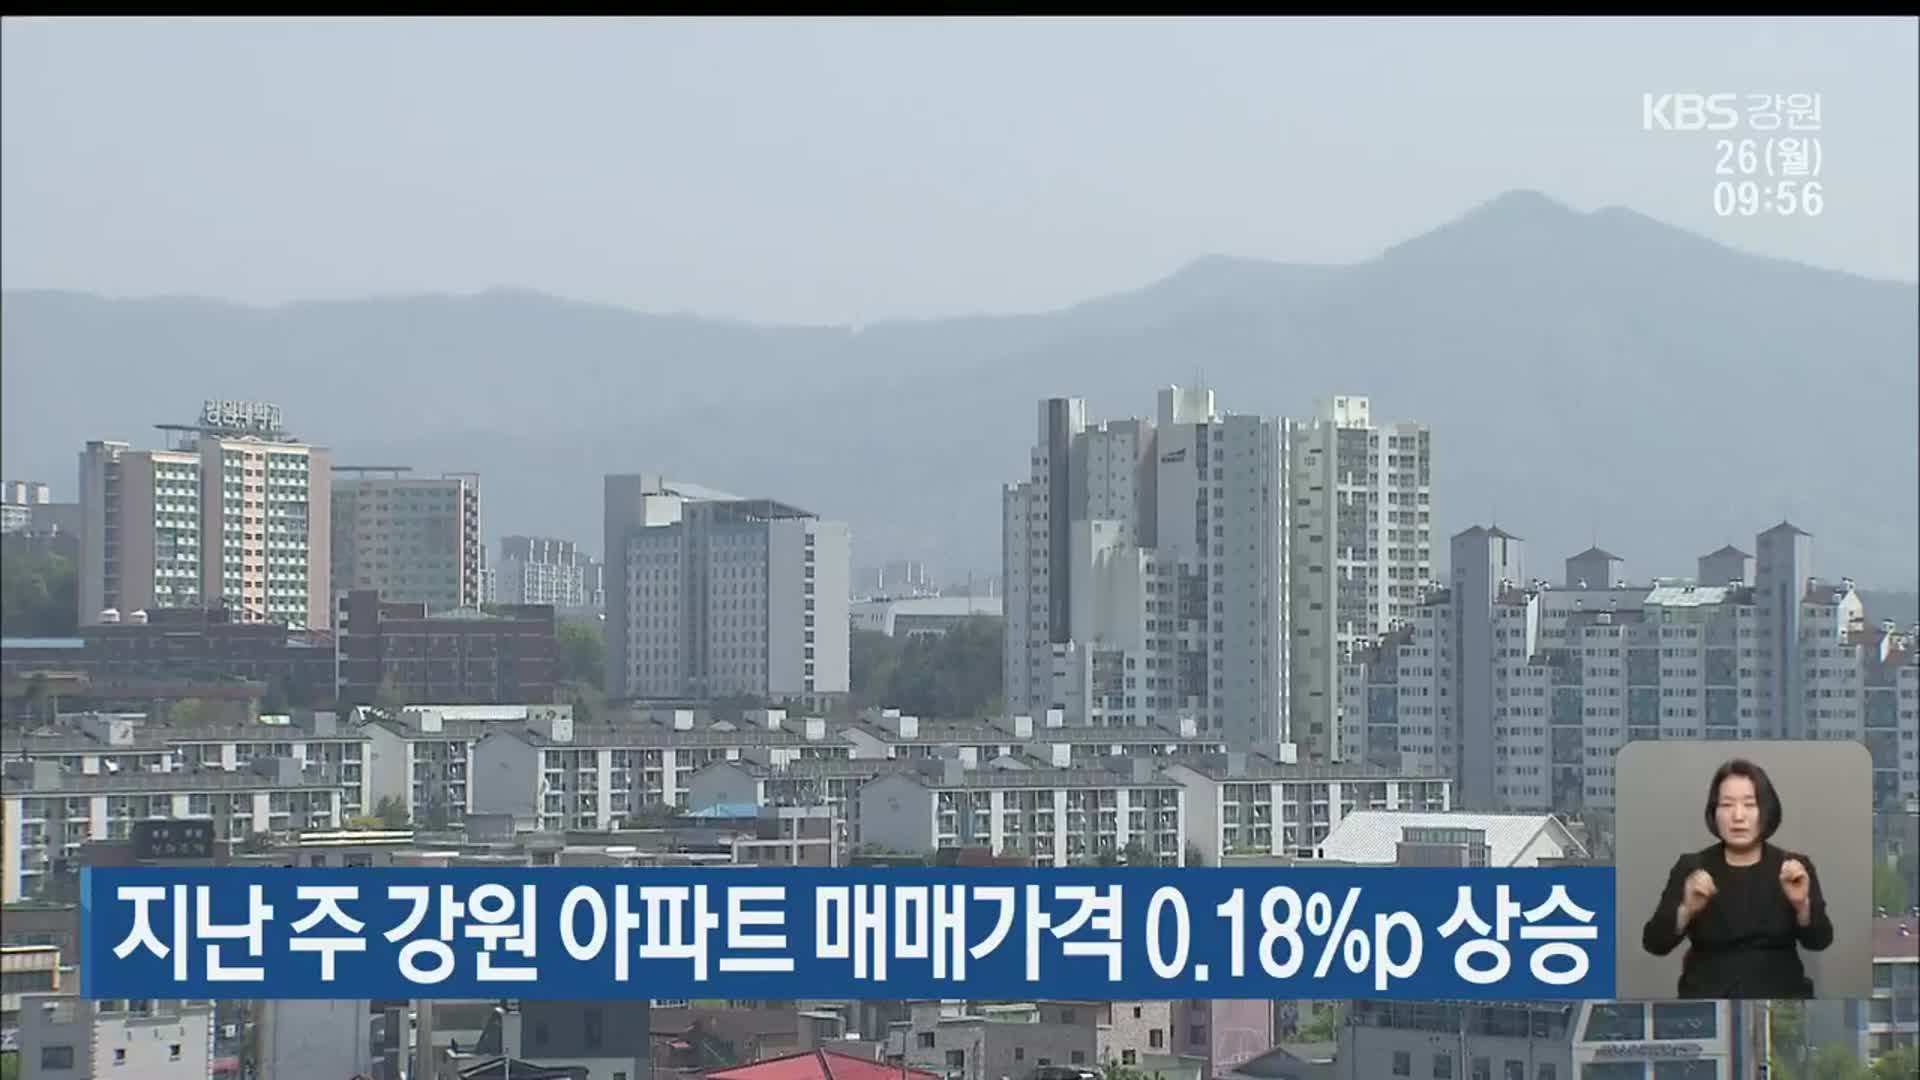 지난 주 강원 아파트 매매가격 0.18%p 상승